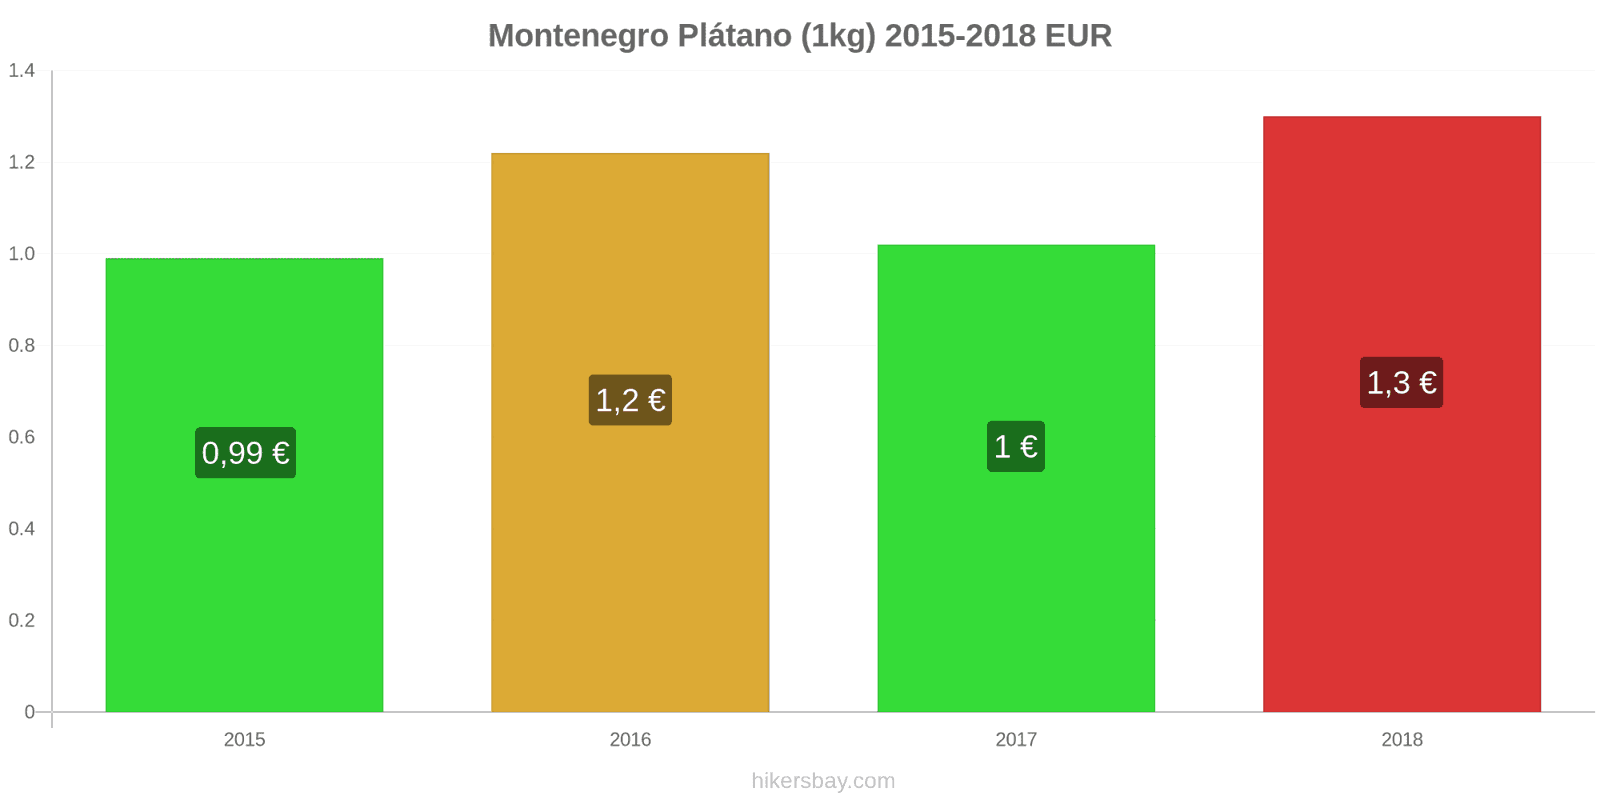 Montenegro cambios de precios Plátanos (1kg) hikersbay.com